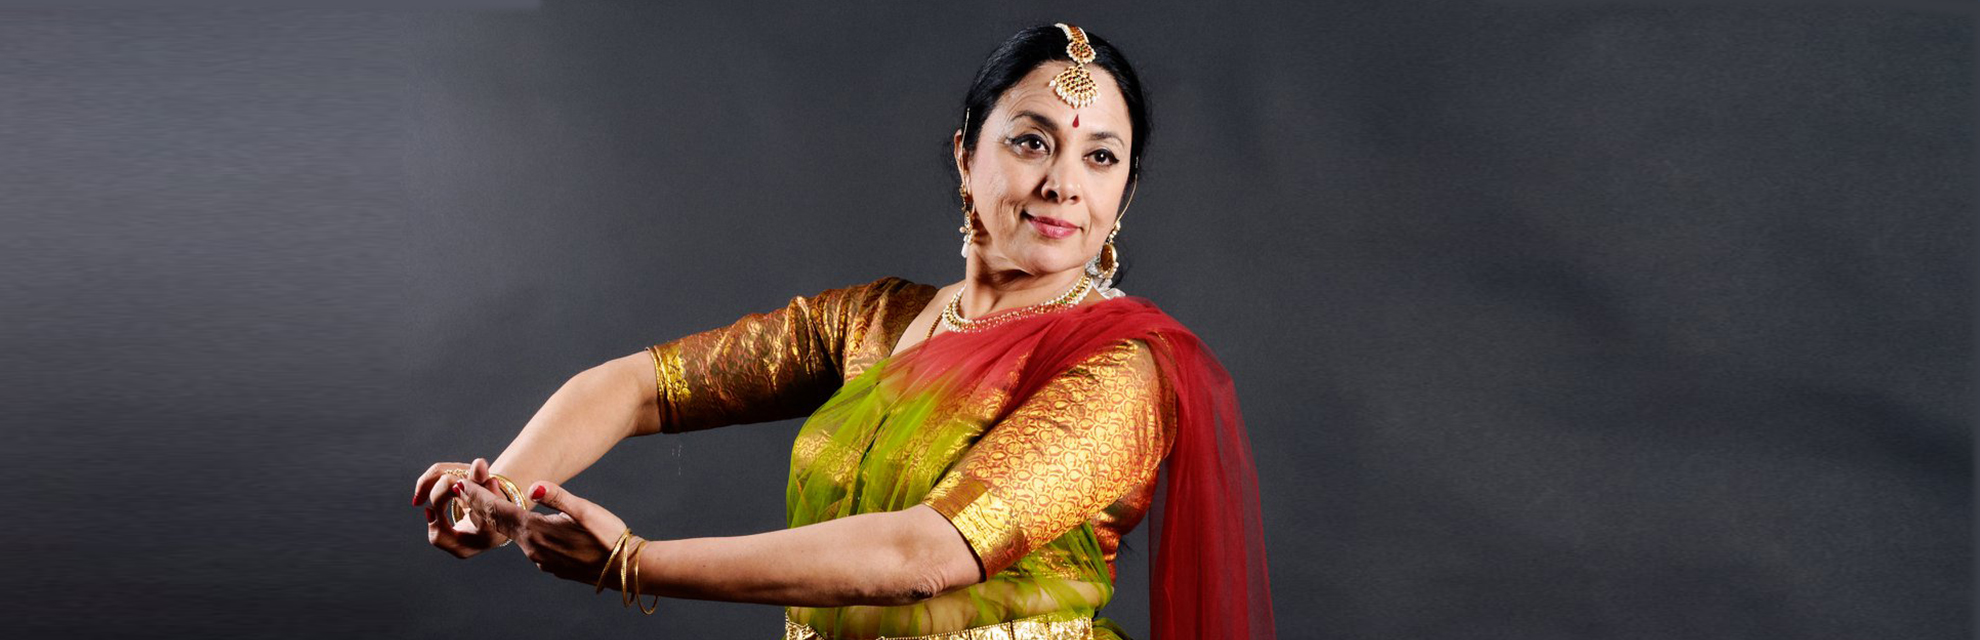 Танцовщица катхак доктор Малини Ранганатан - культурный посол Индии в мире.